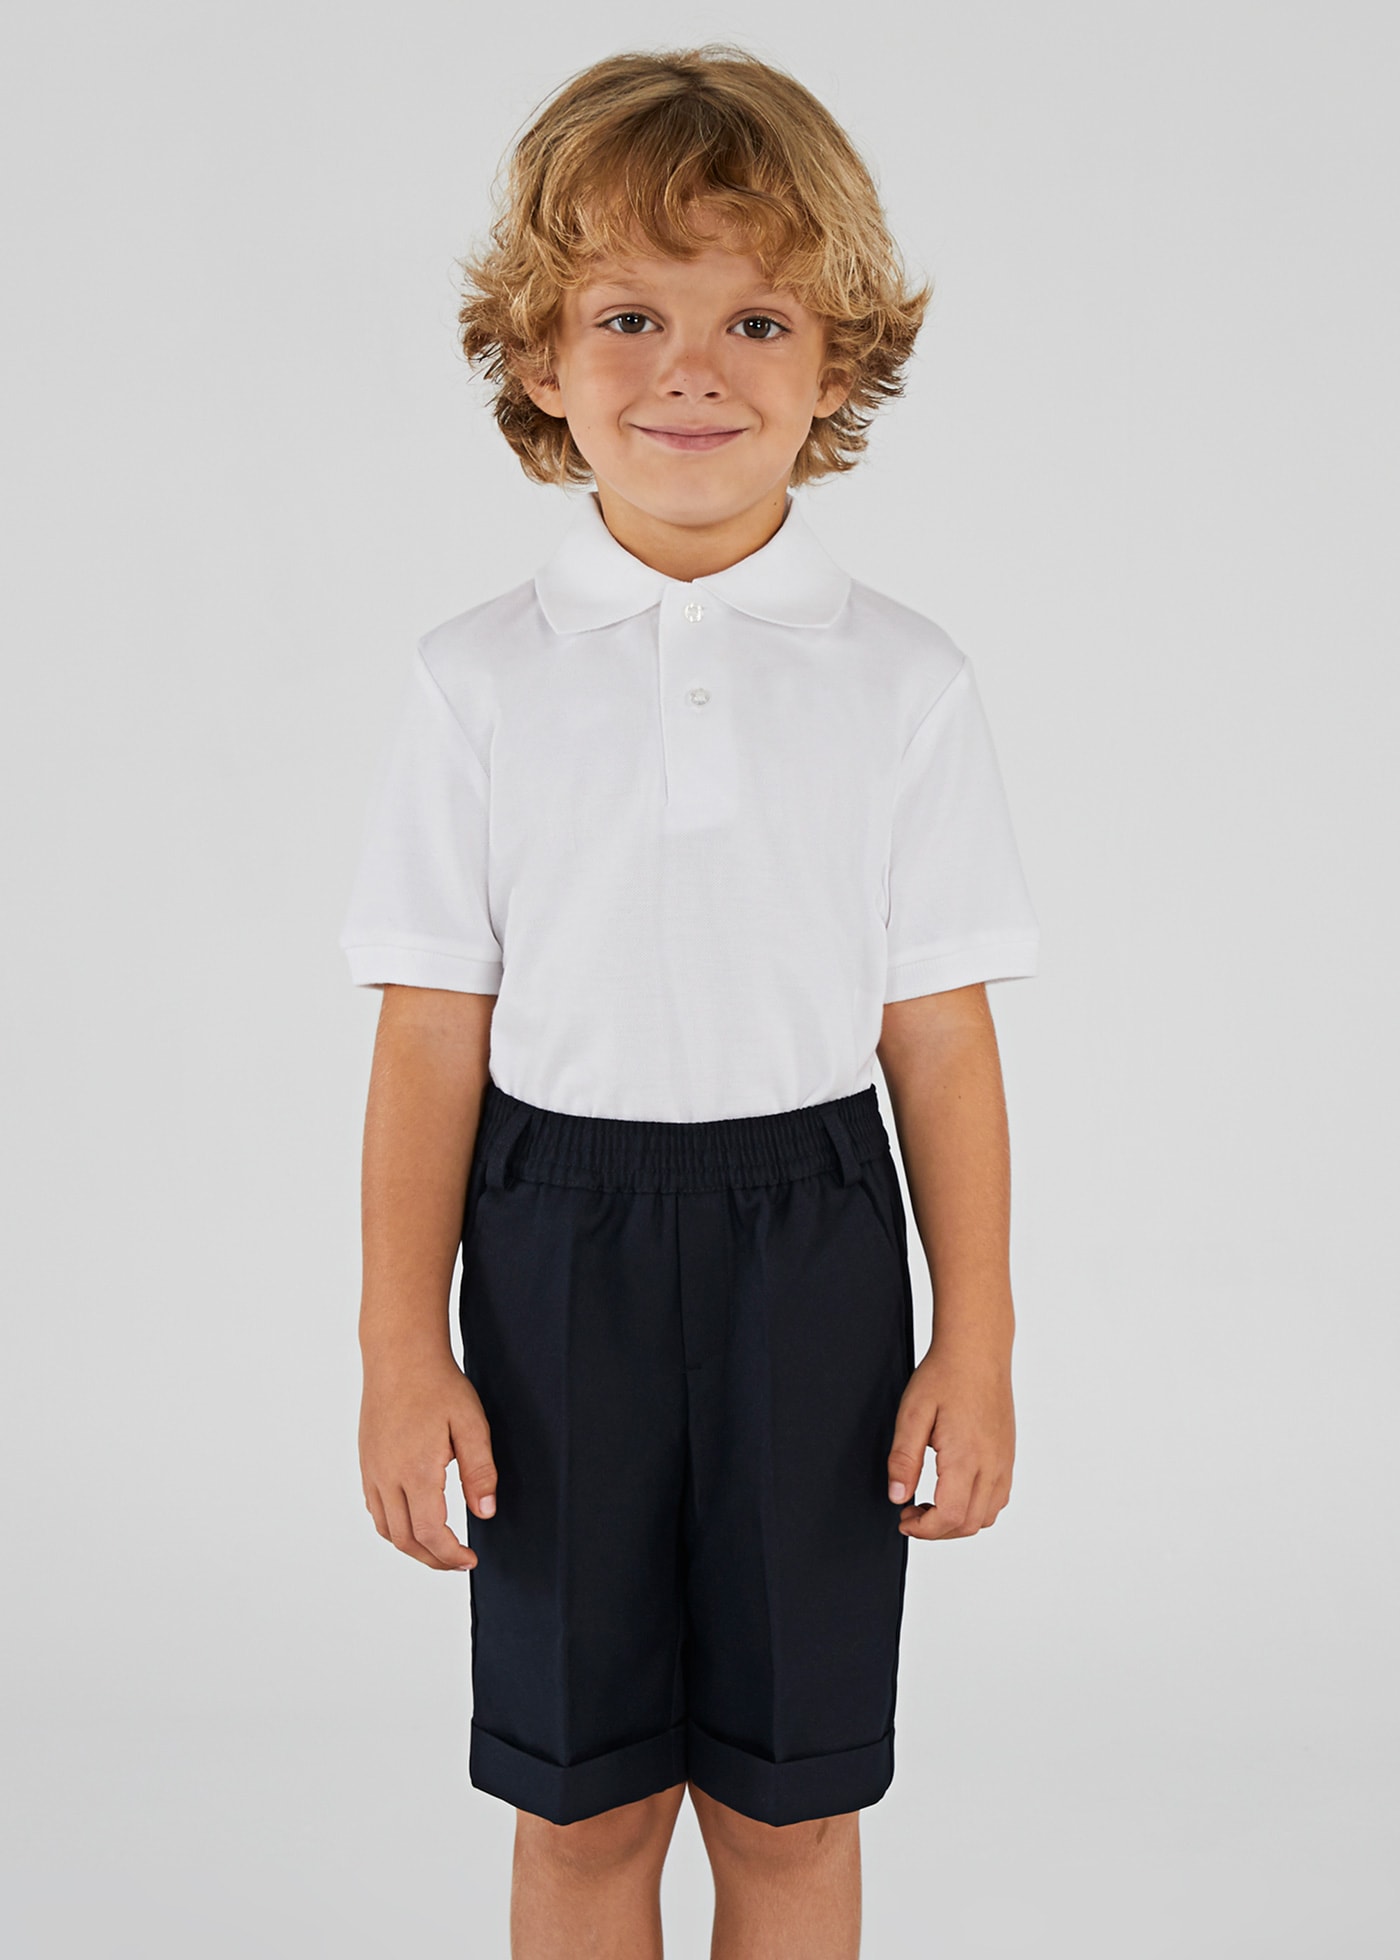 Pantalón corto uniforme niño